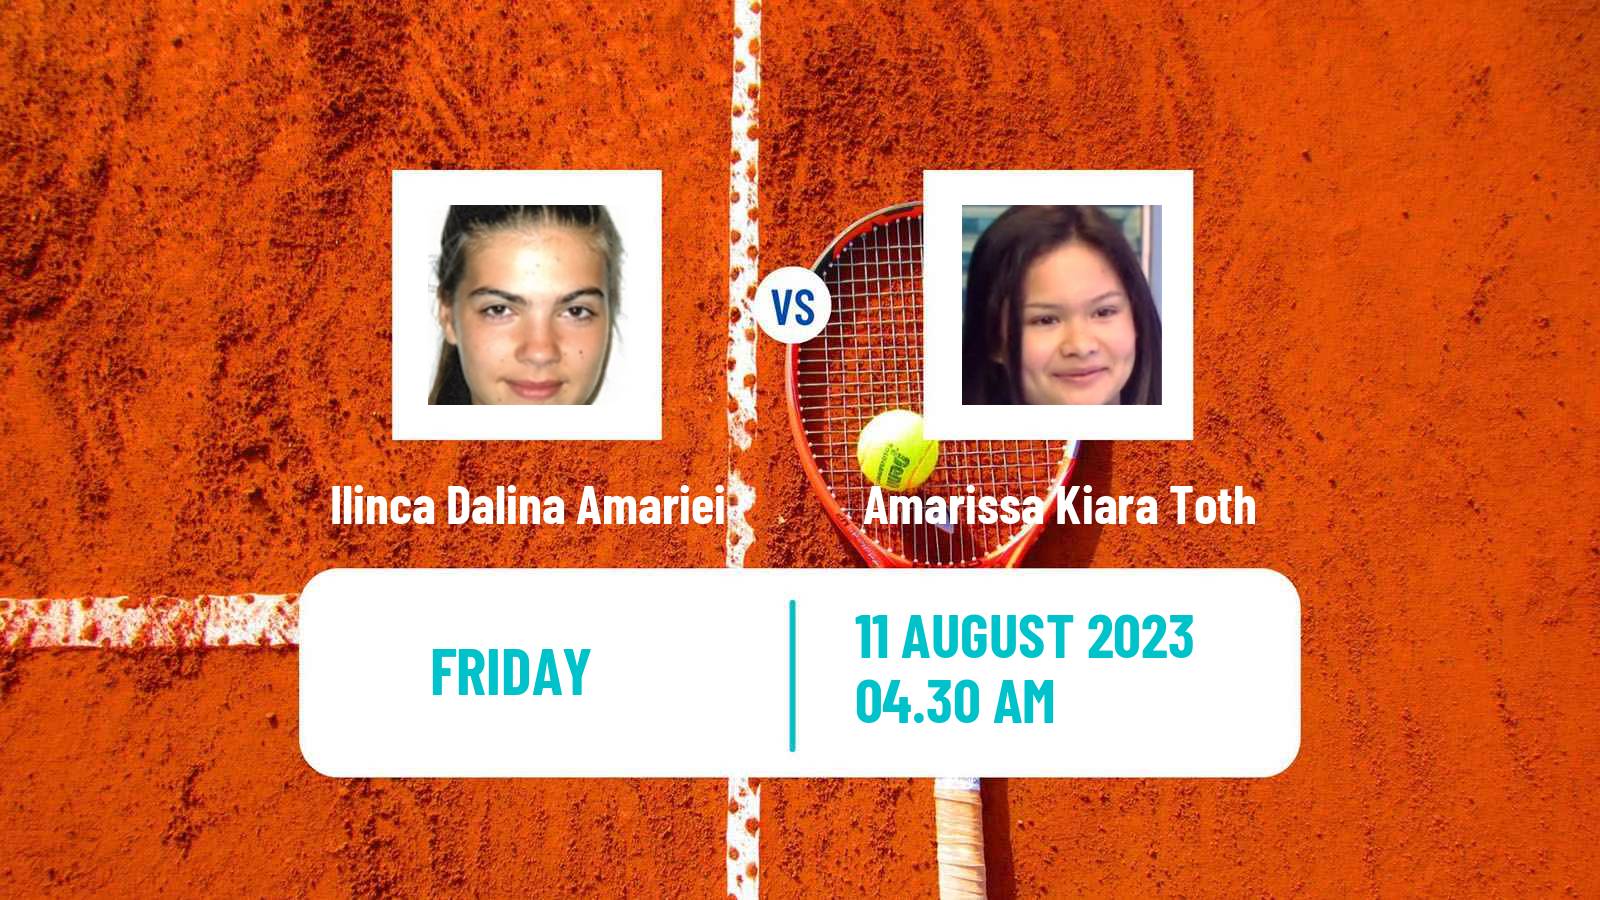 Tennis ITF W25 Osijek 2 Women Ilinca Dalina Amariei - Amarissa Kiara Toth